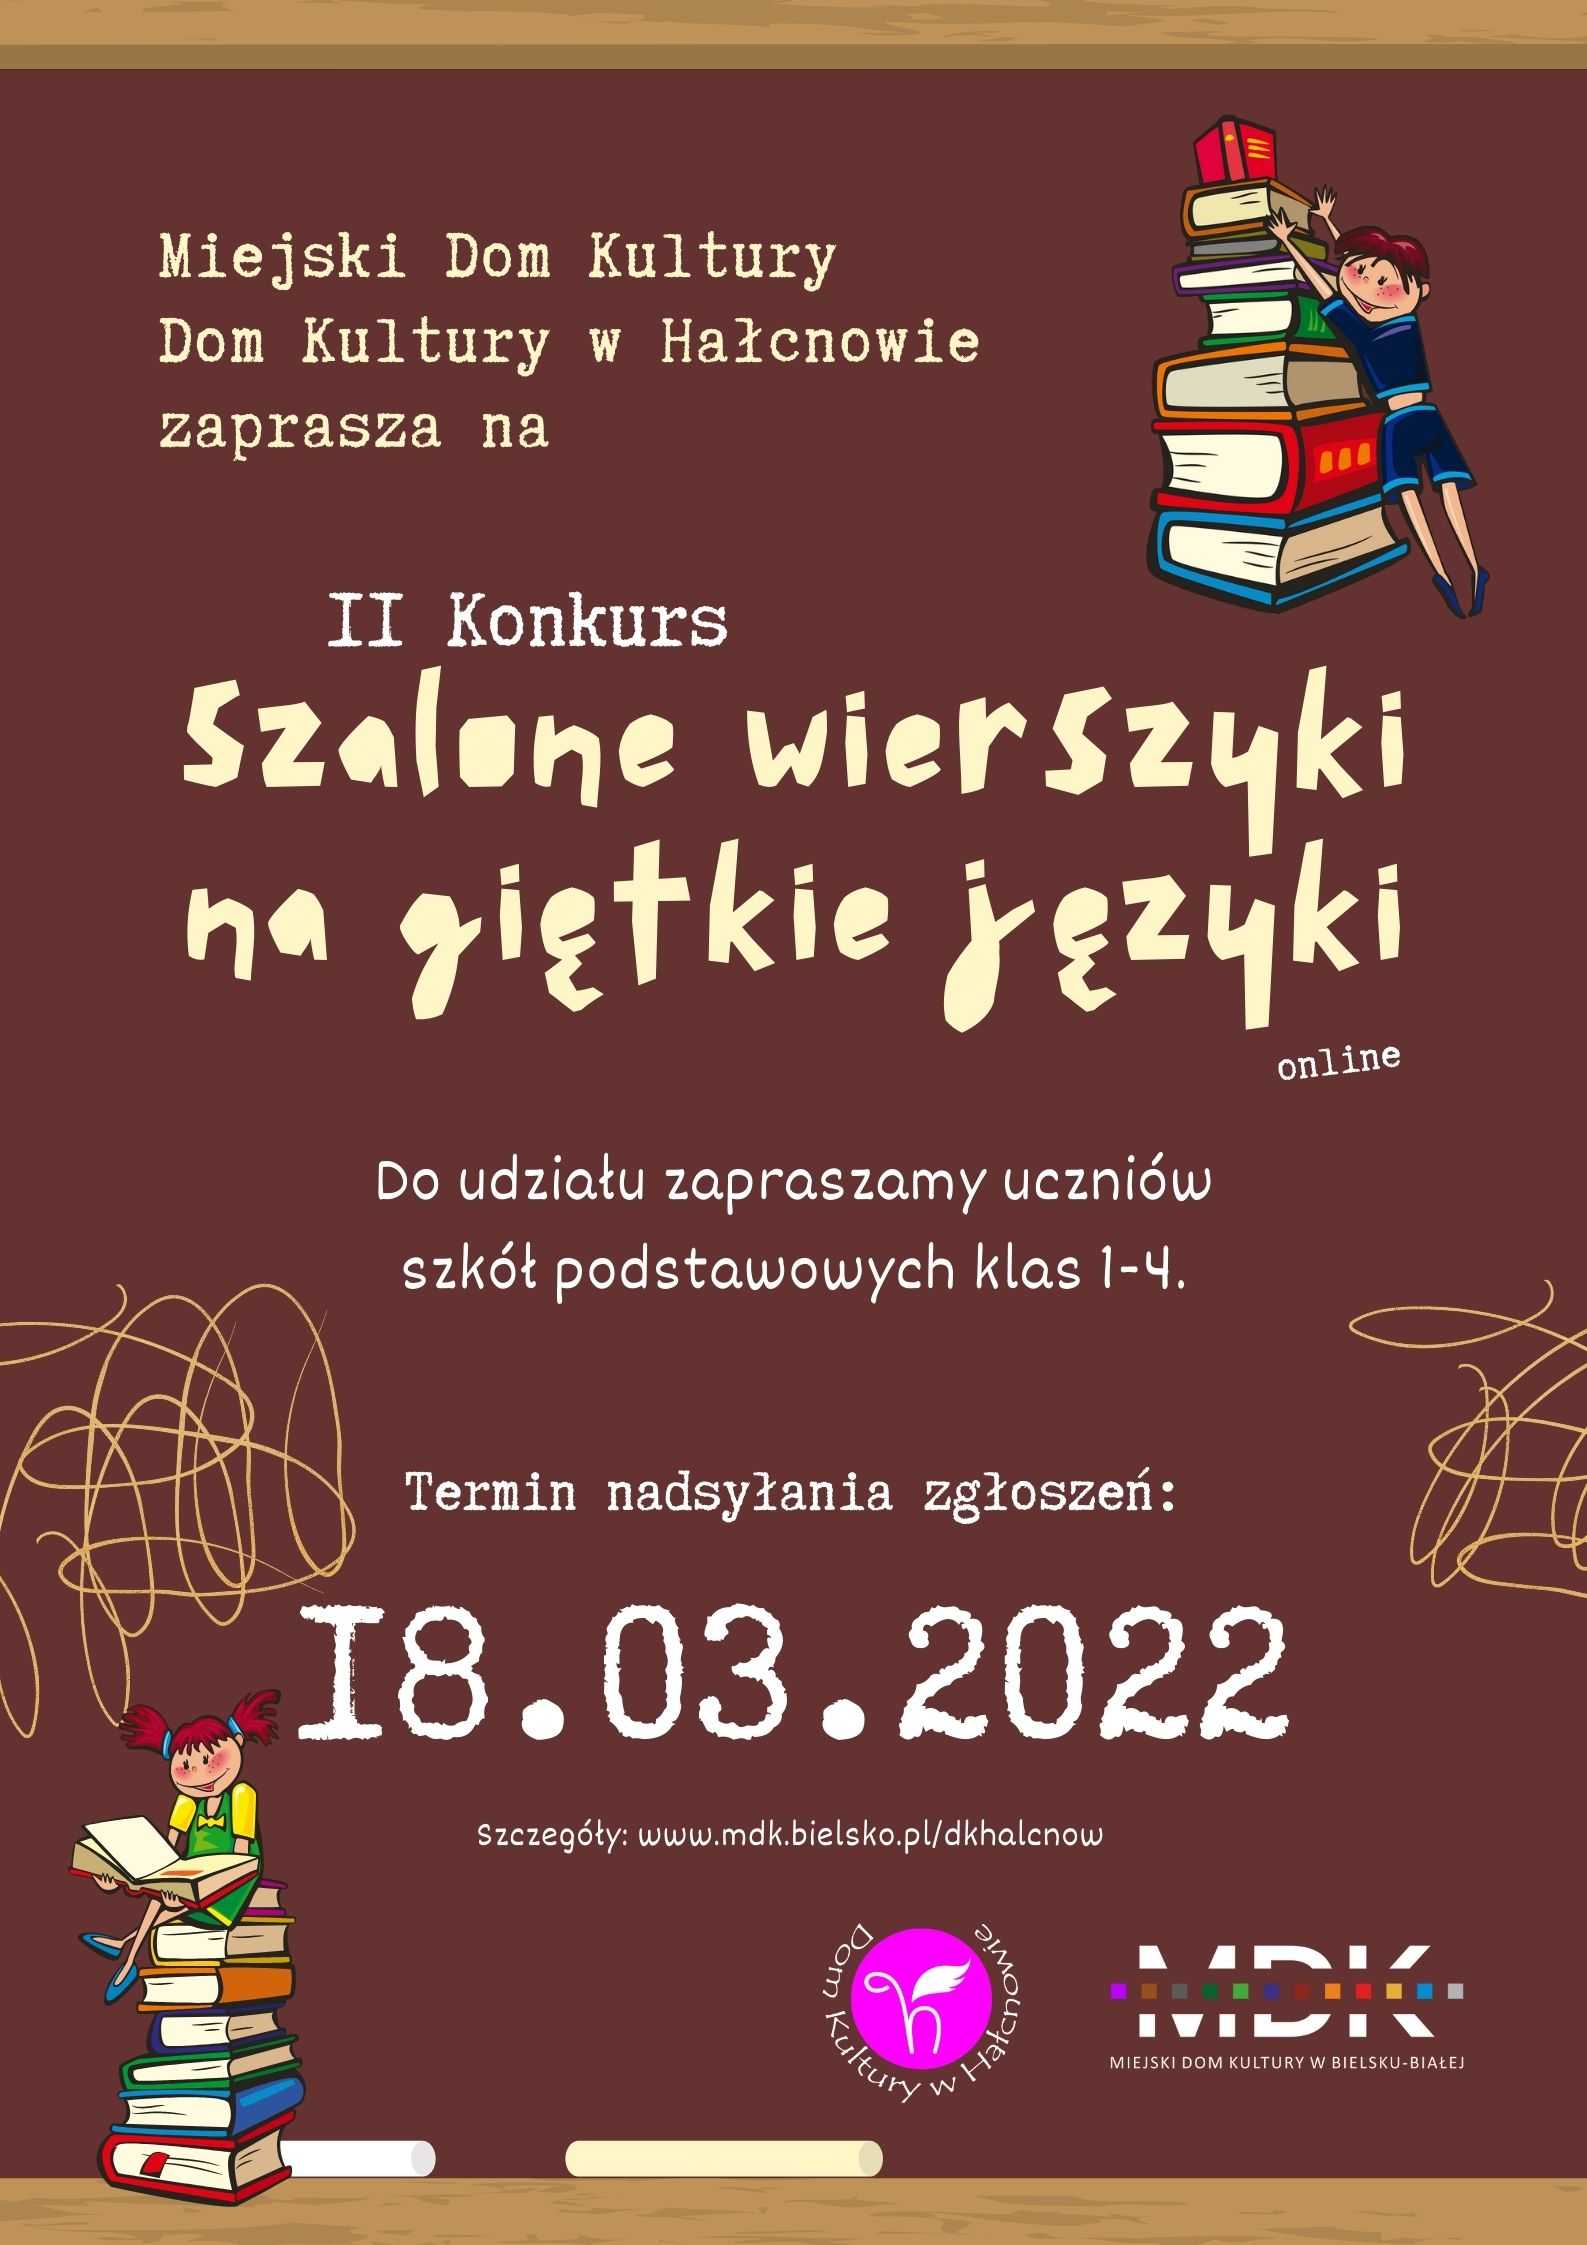  2. Konkurs On-line Szalone Wierszyki na Giętkie Języki Na zdjęciu plakat konkursu